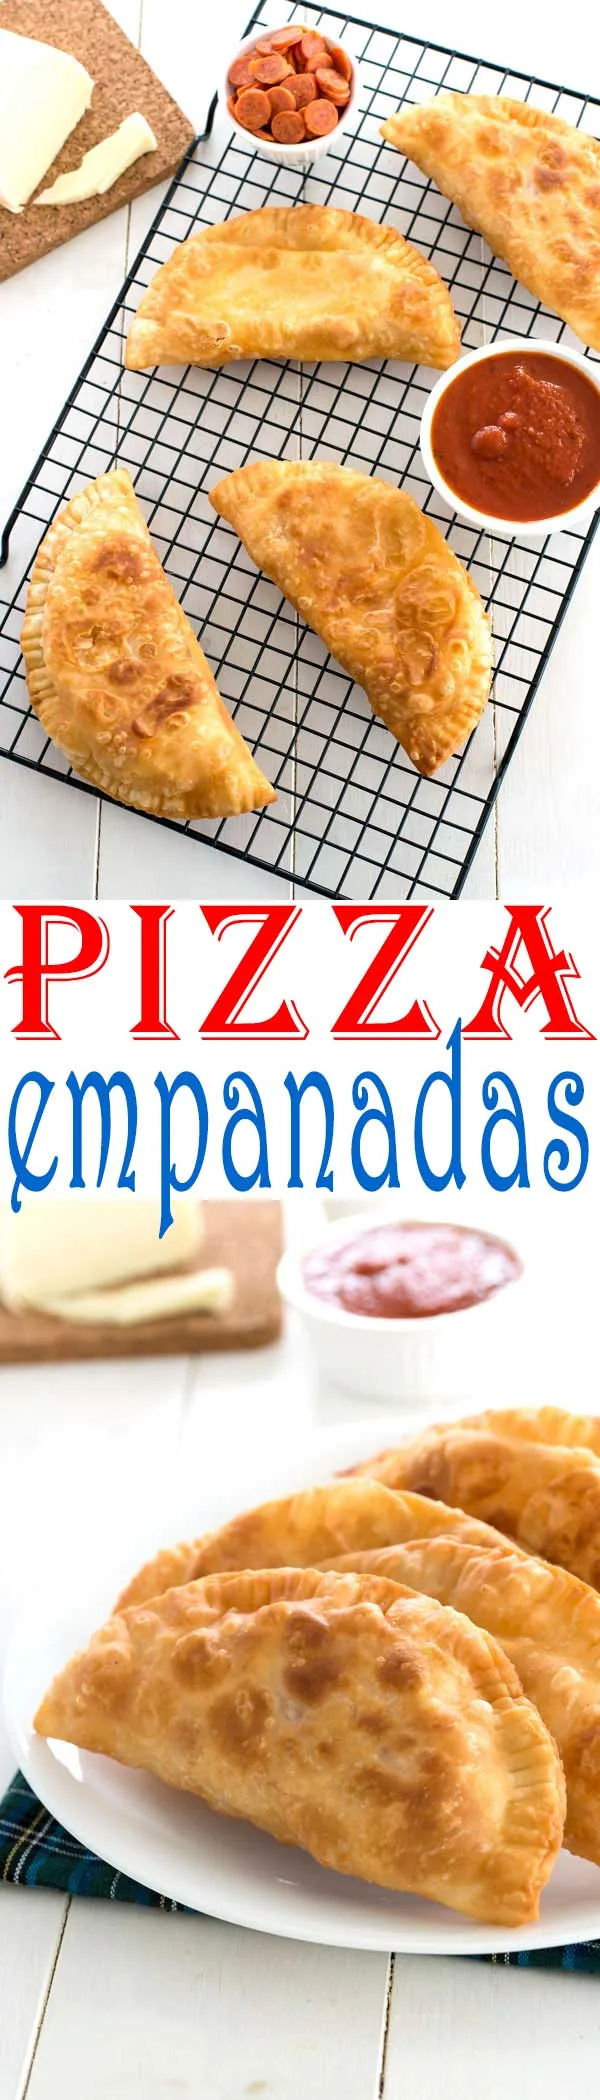 Easy Puerto Rican Pizza Empanadas (empanadillas de pizza) with pepperoni and cheese! #piday #recipes #recipe #recipeideas #easyrecipe #food #foodgawker #foodblog #recipeoftheday #appetizer #cheese #partyfood #dinner #pepperoni #pizza #empanadas #puertorican